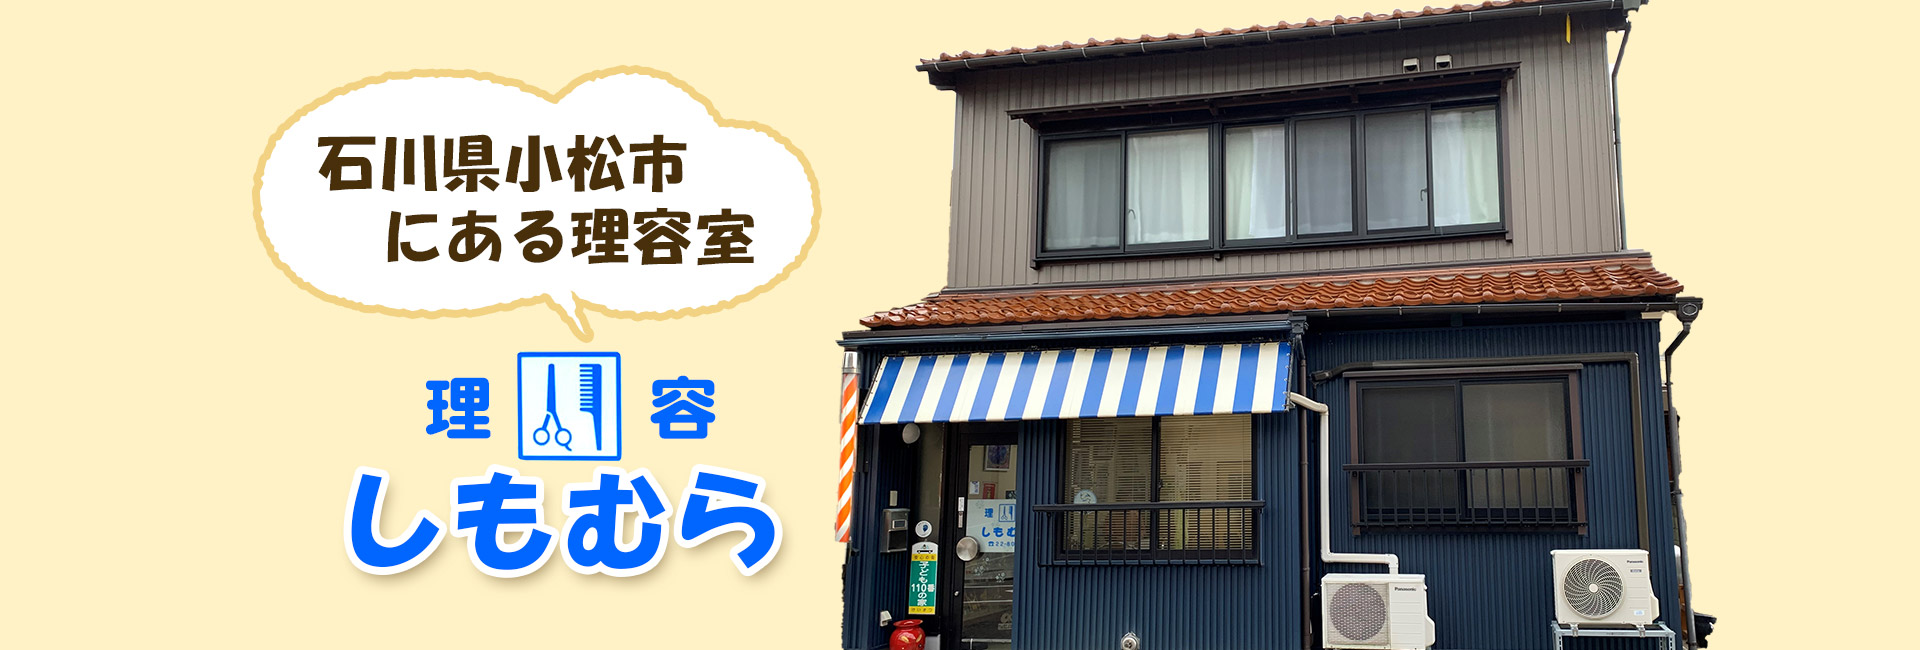 石川県小松市にある理容室 しもむら散髪屋